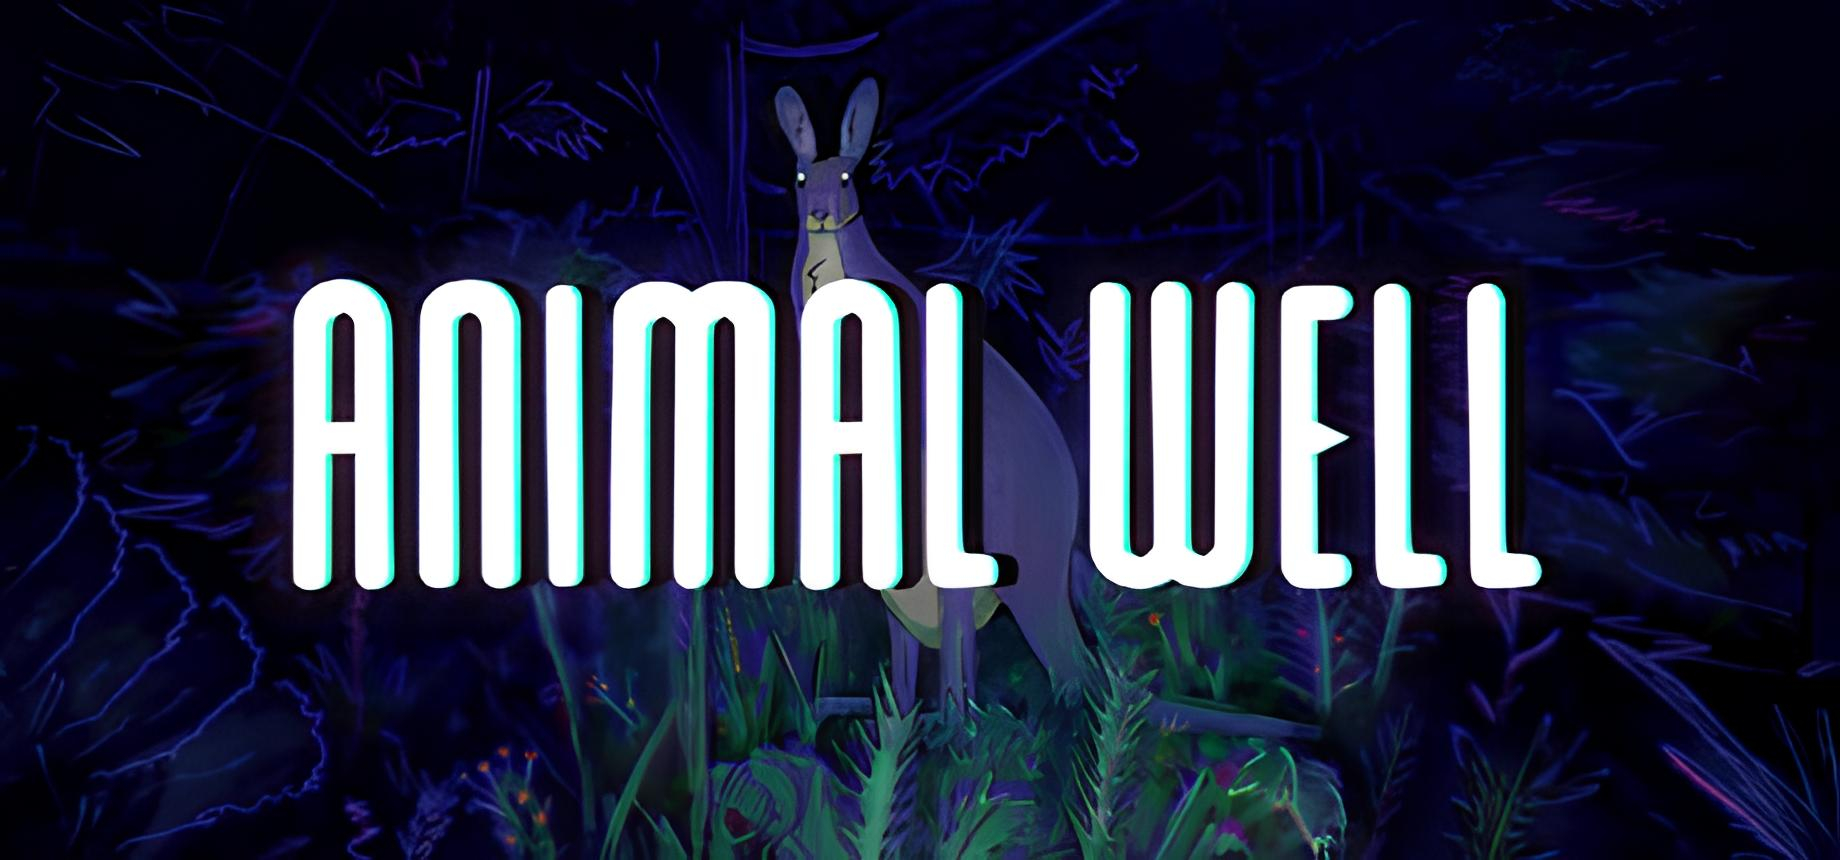 Обложка игры Animal Well